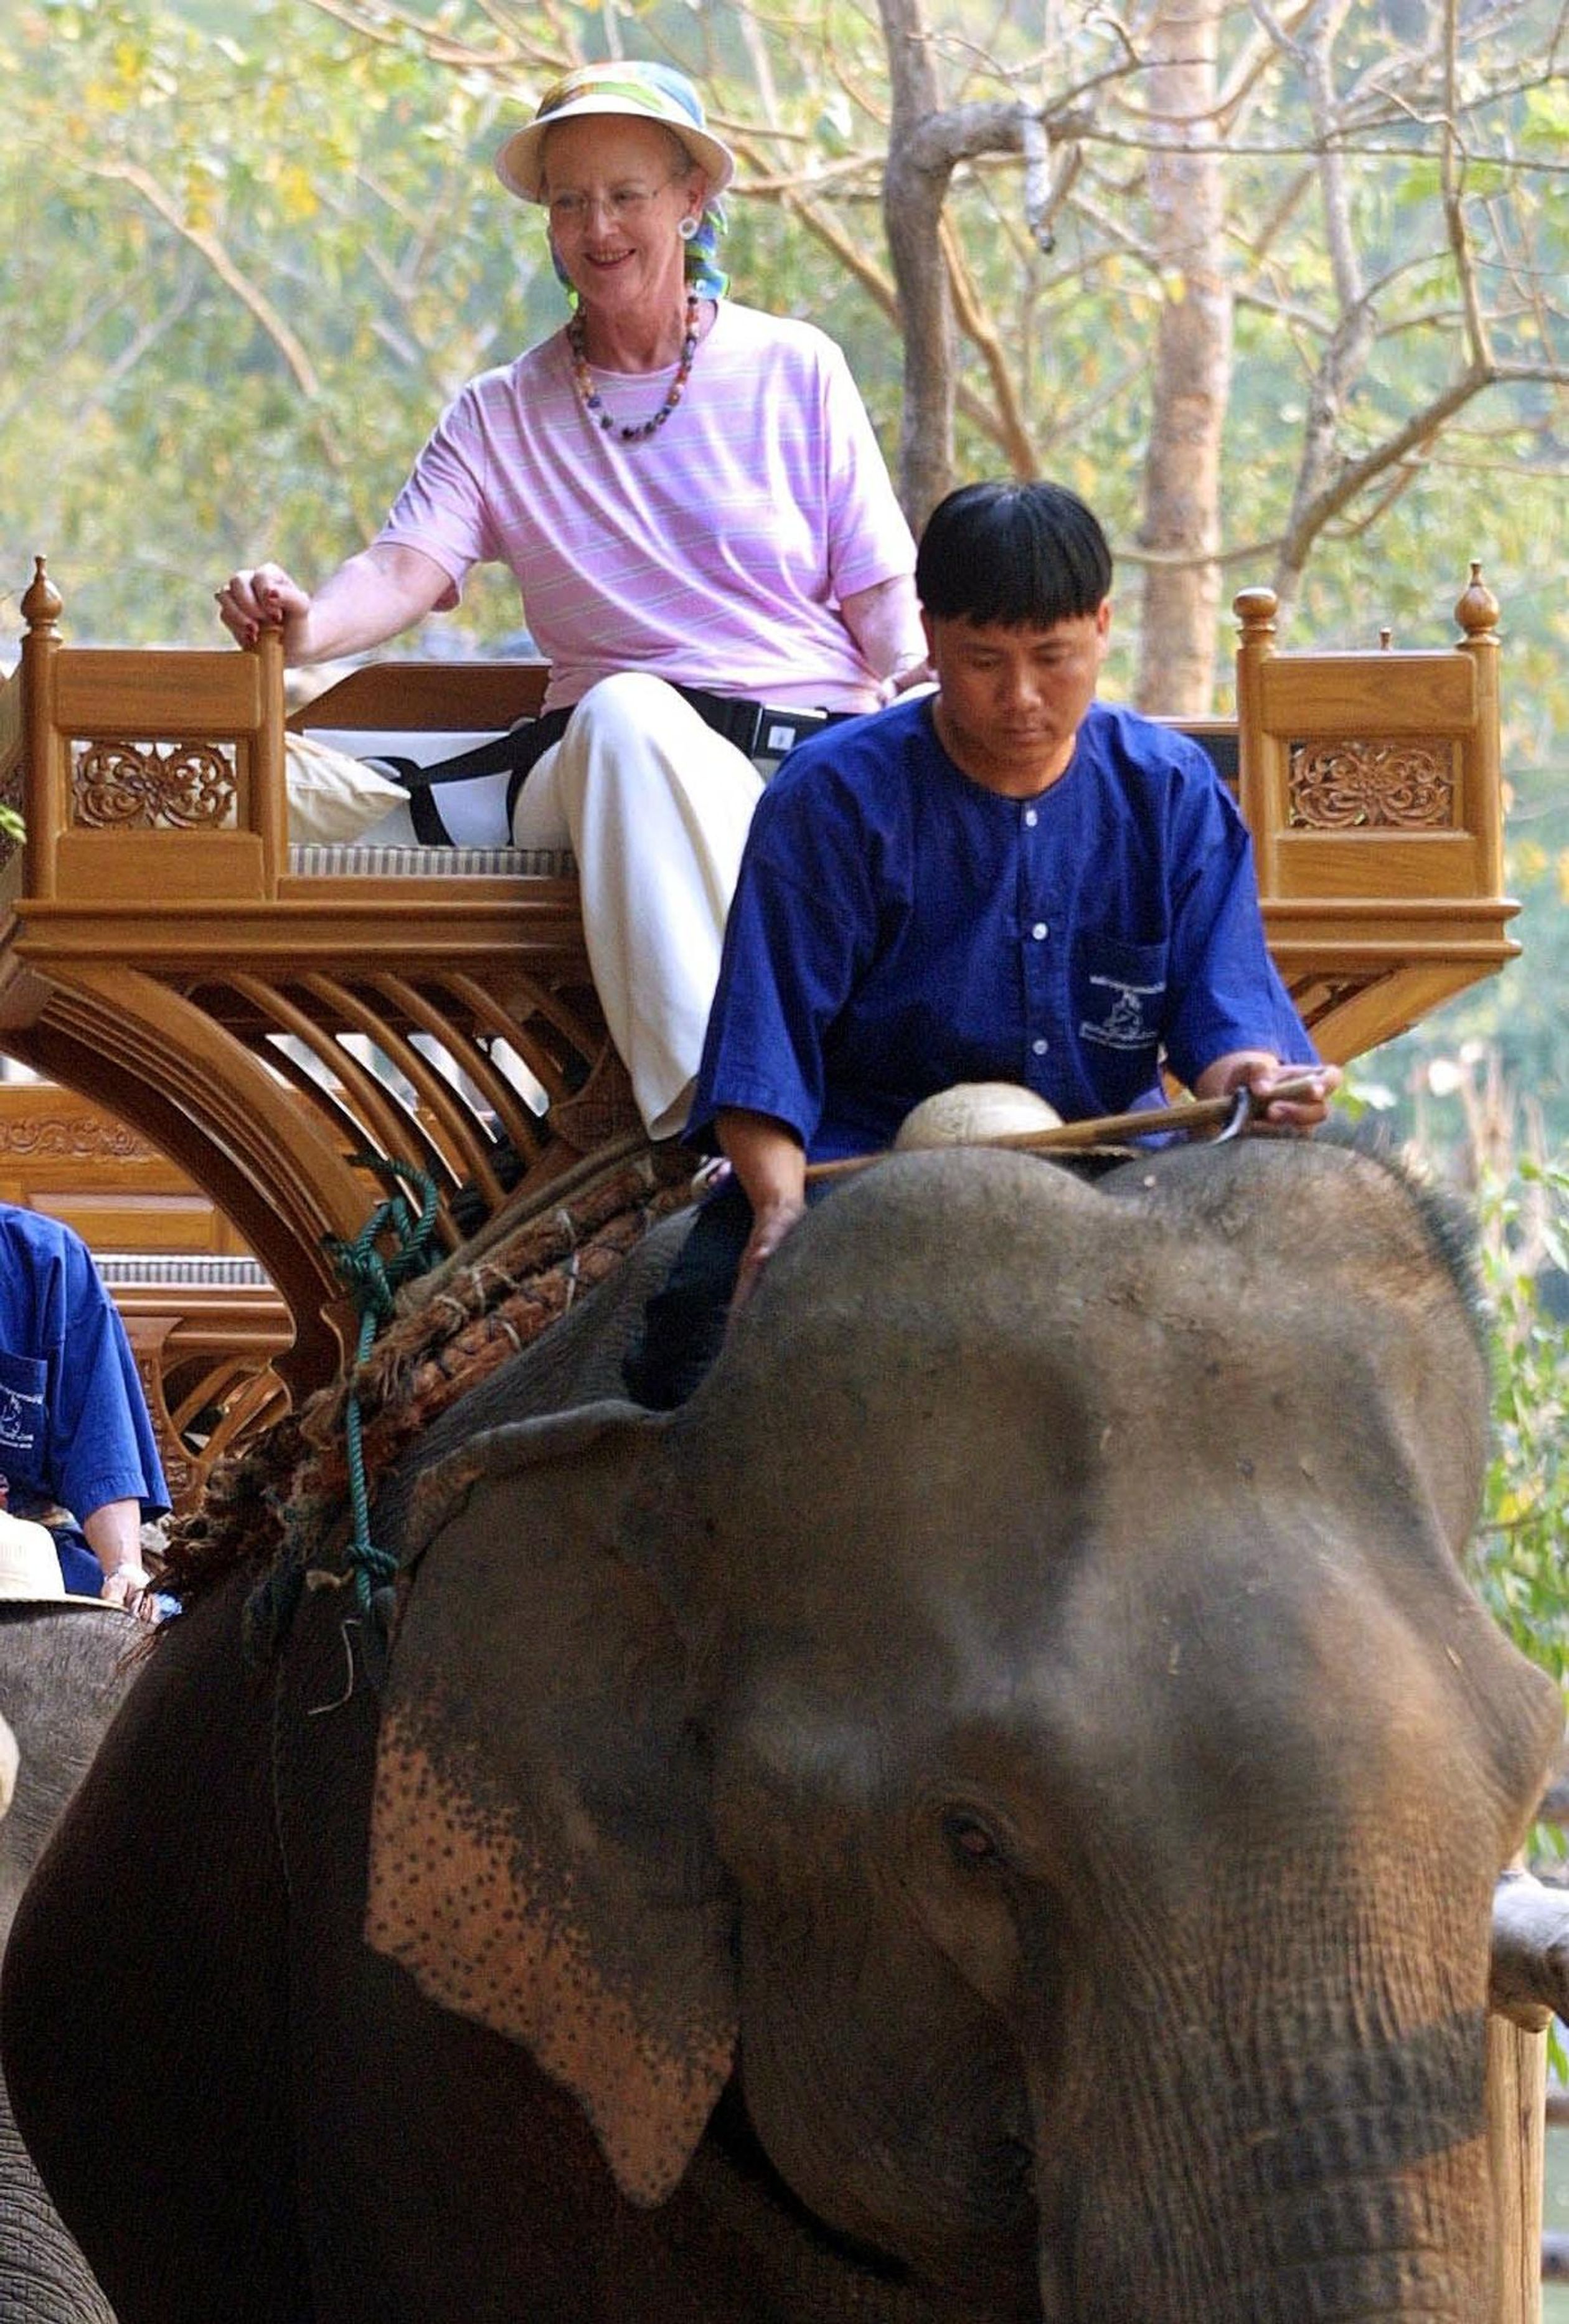 In 2001 brengt koningin Margrethe een bezoek aan Thailand. Een ritje op een olifant kon blijkbaar